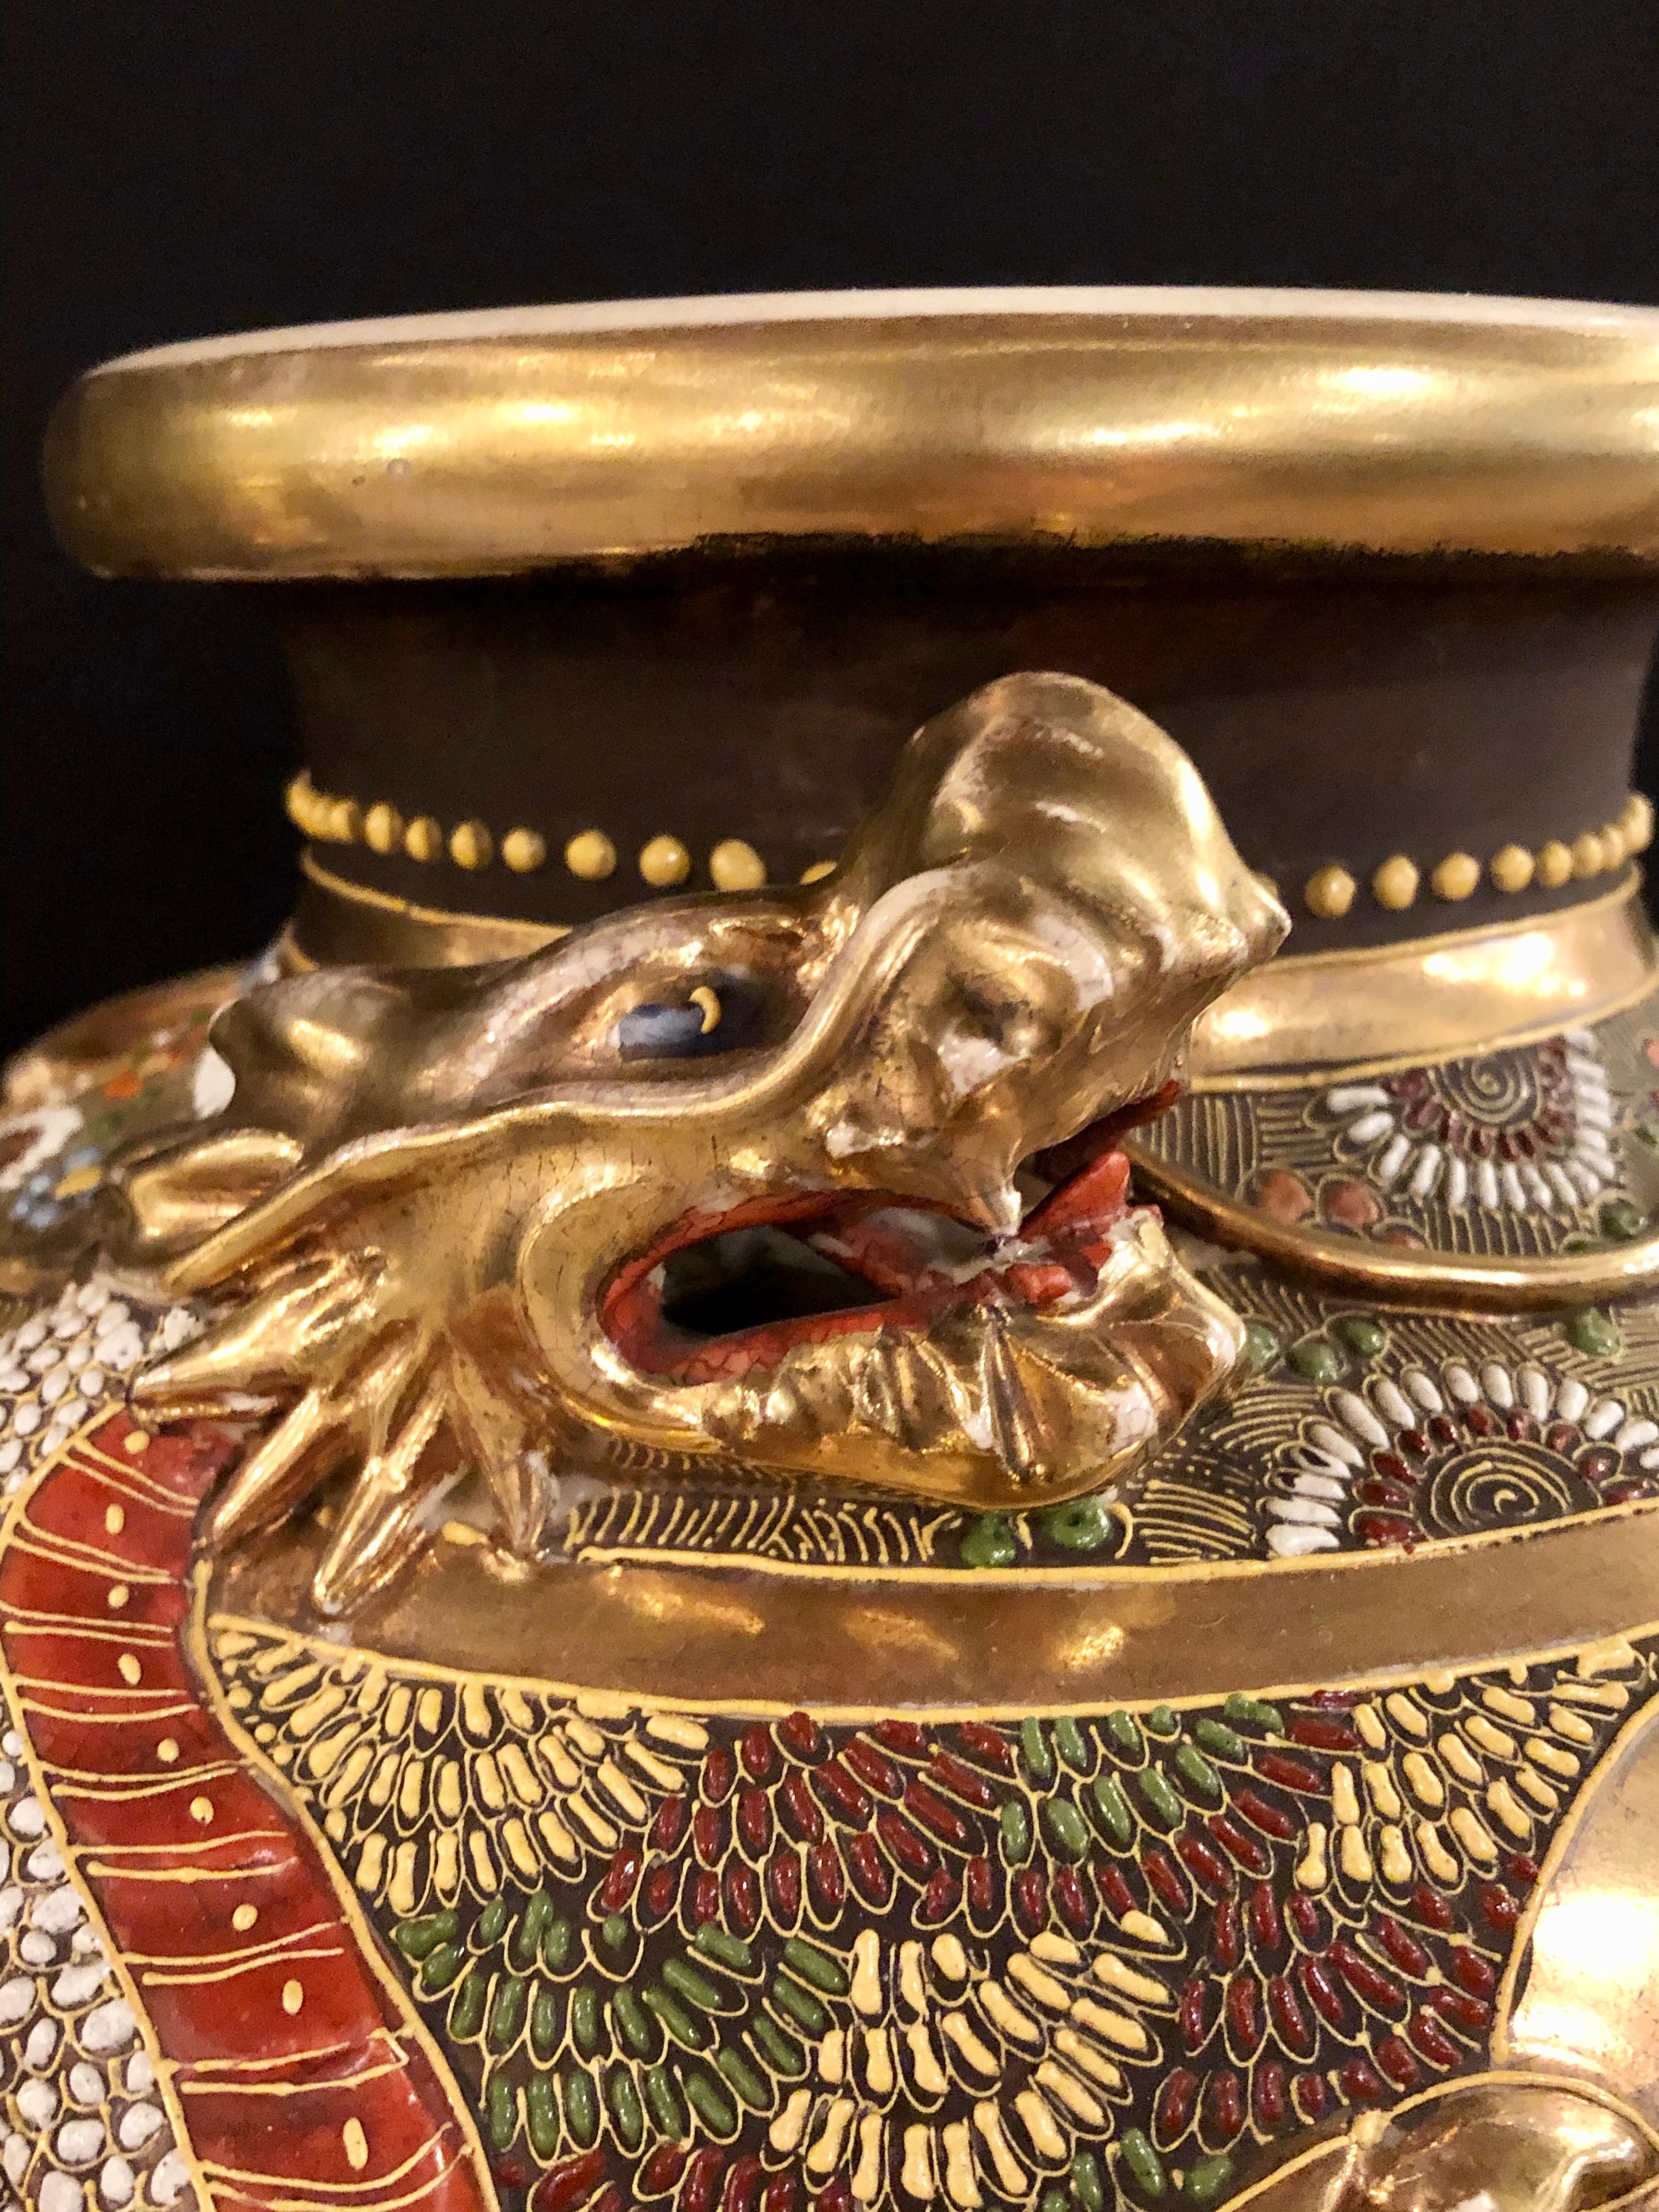 Anglo-Japanese Japanese Satsuma Vase Large and Impressive Gilt Gold Dragon Decorated, Signed